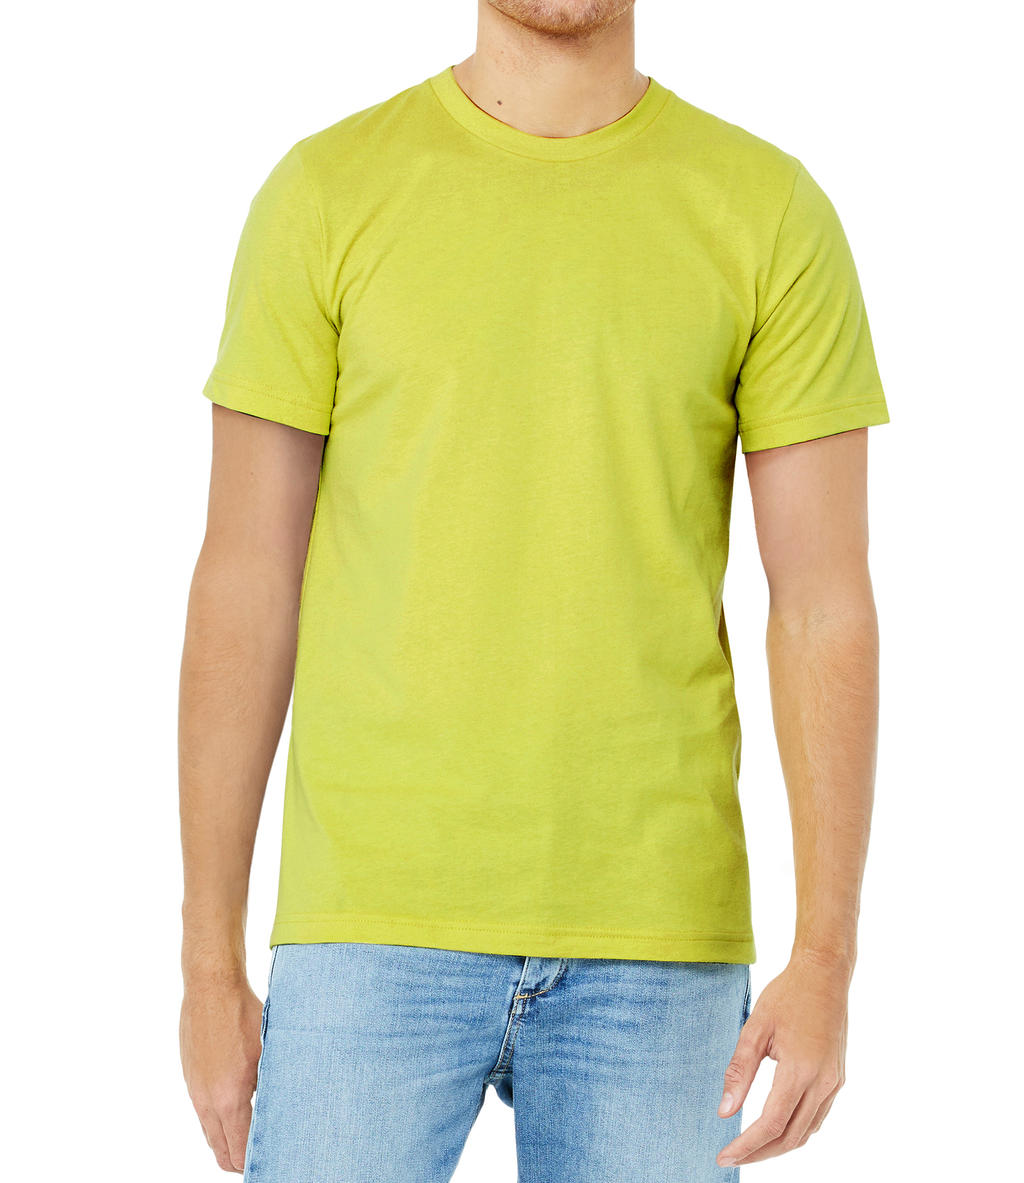 Tričko Bella Jersey - žluté-zelené, XL